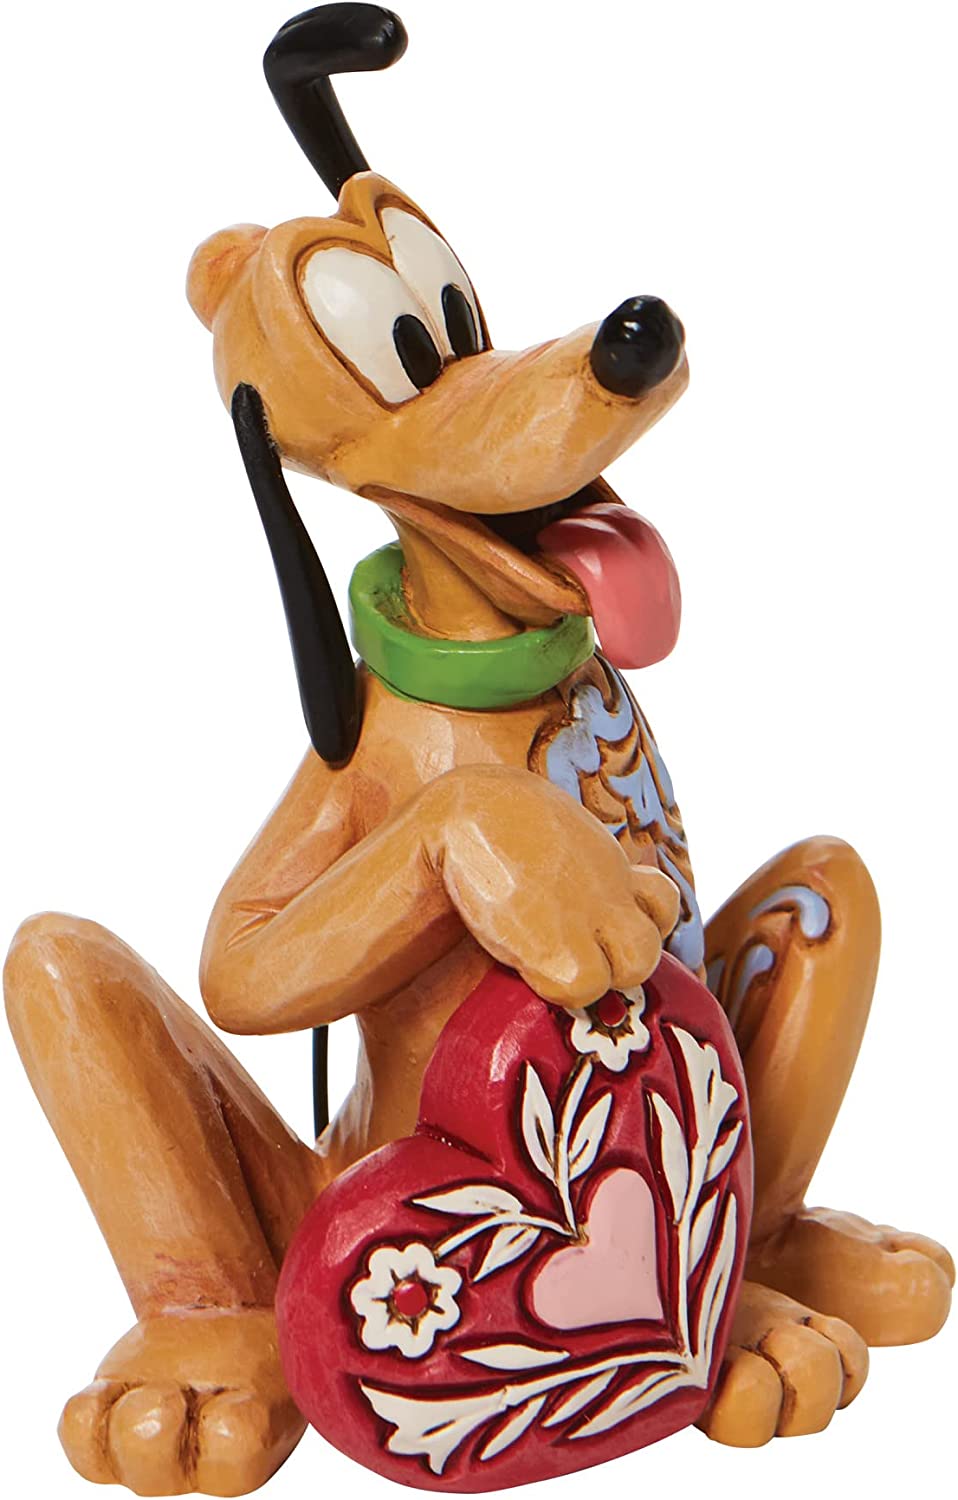 Pluto-mit-Herz-Figur-Disney-berlindeluxe-hind-herz-ohren-seite